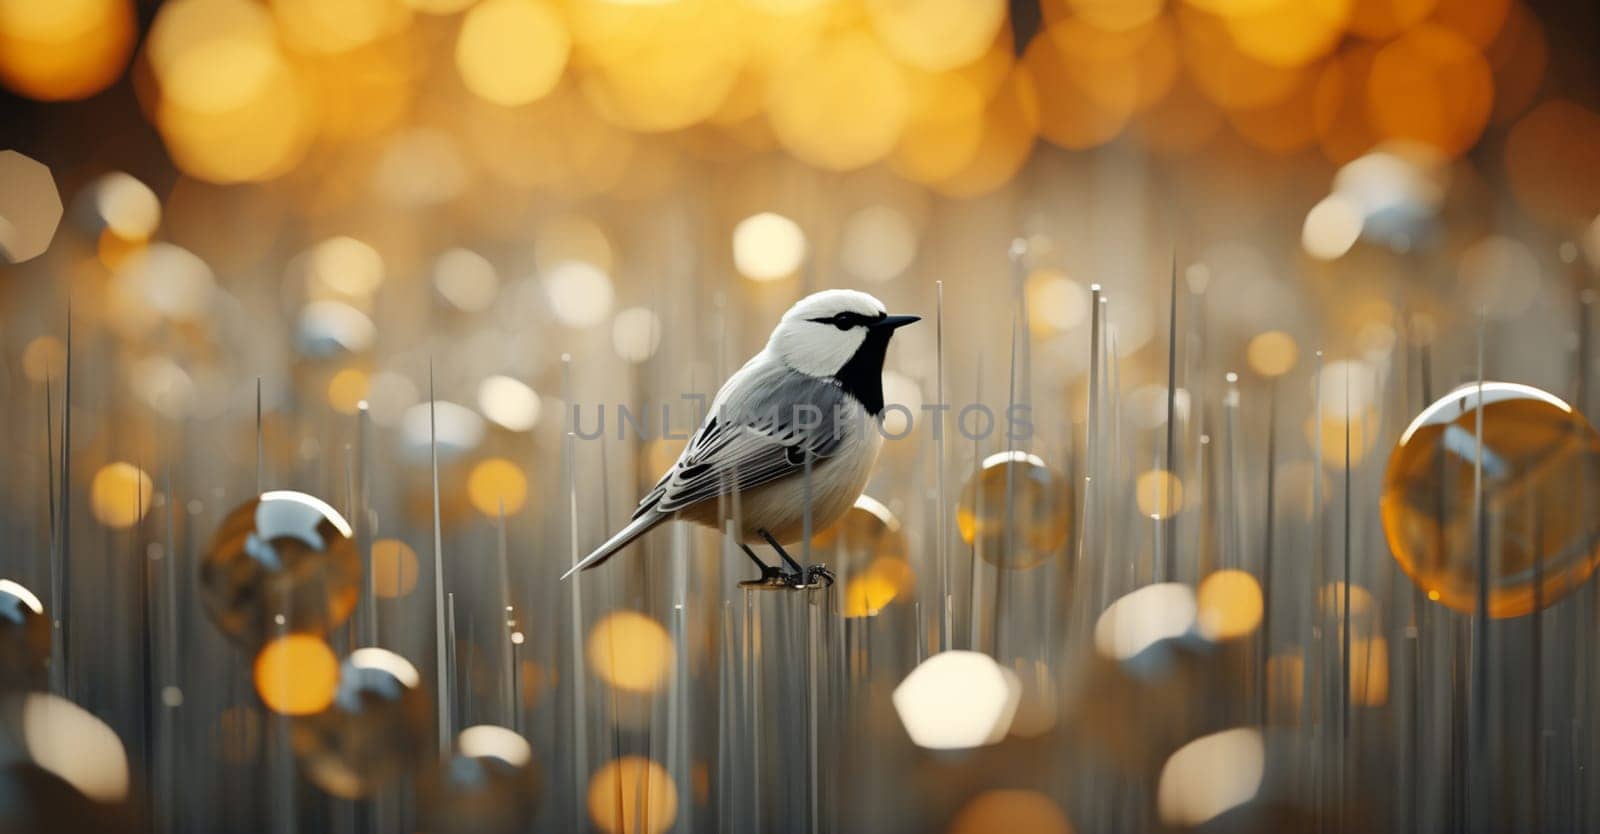 4k bird photo,4k sparrow photo,Cute bird. High quality photo